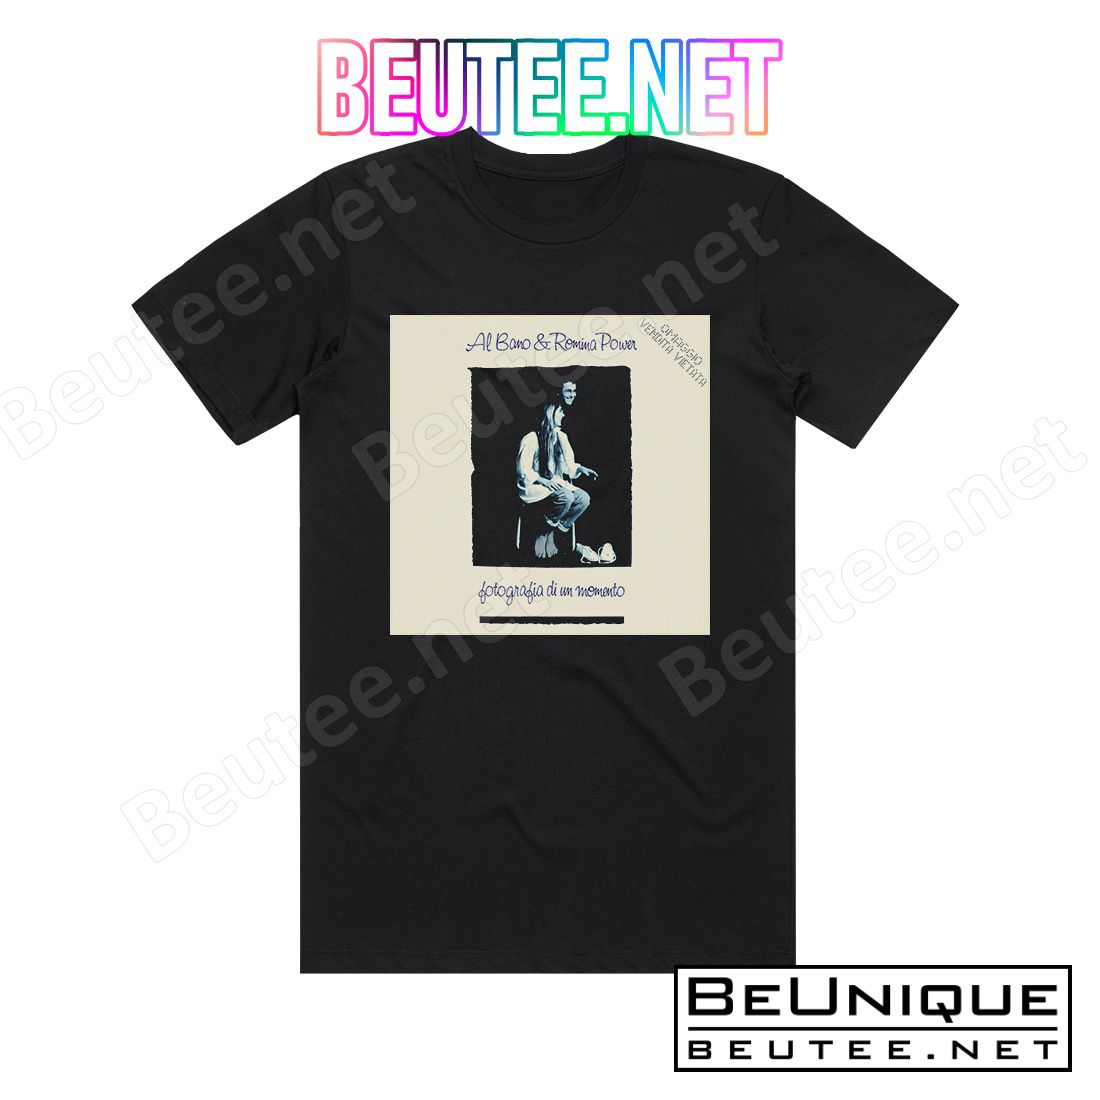 Al Bano and Romina Power Fotografia Di Un Momento Album Cover T-Shirt